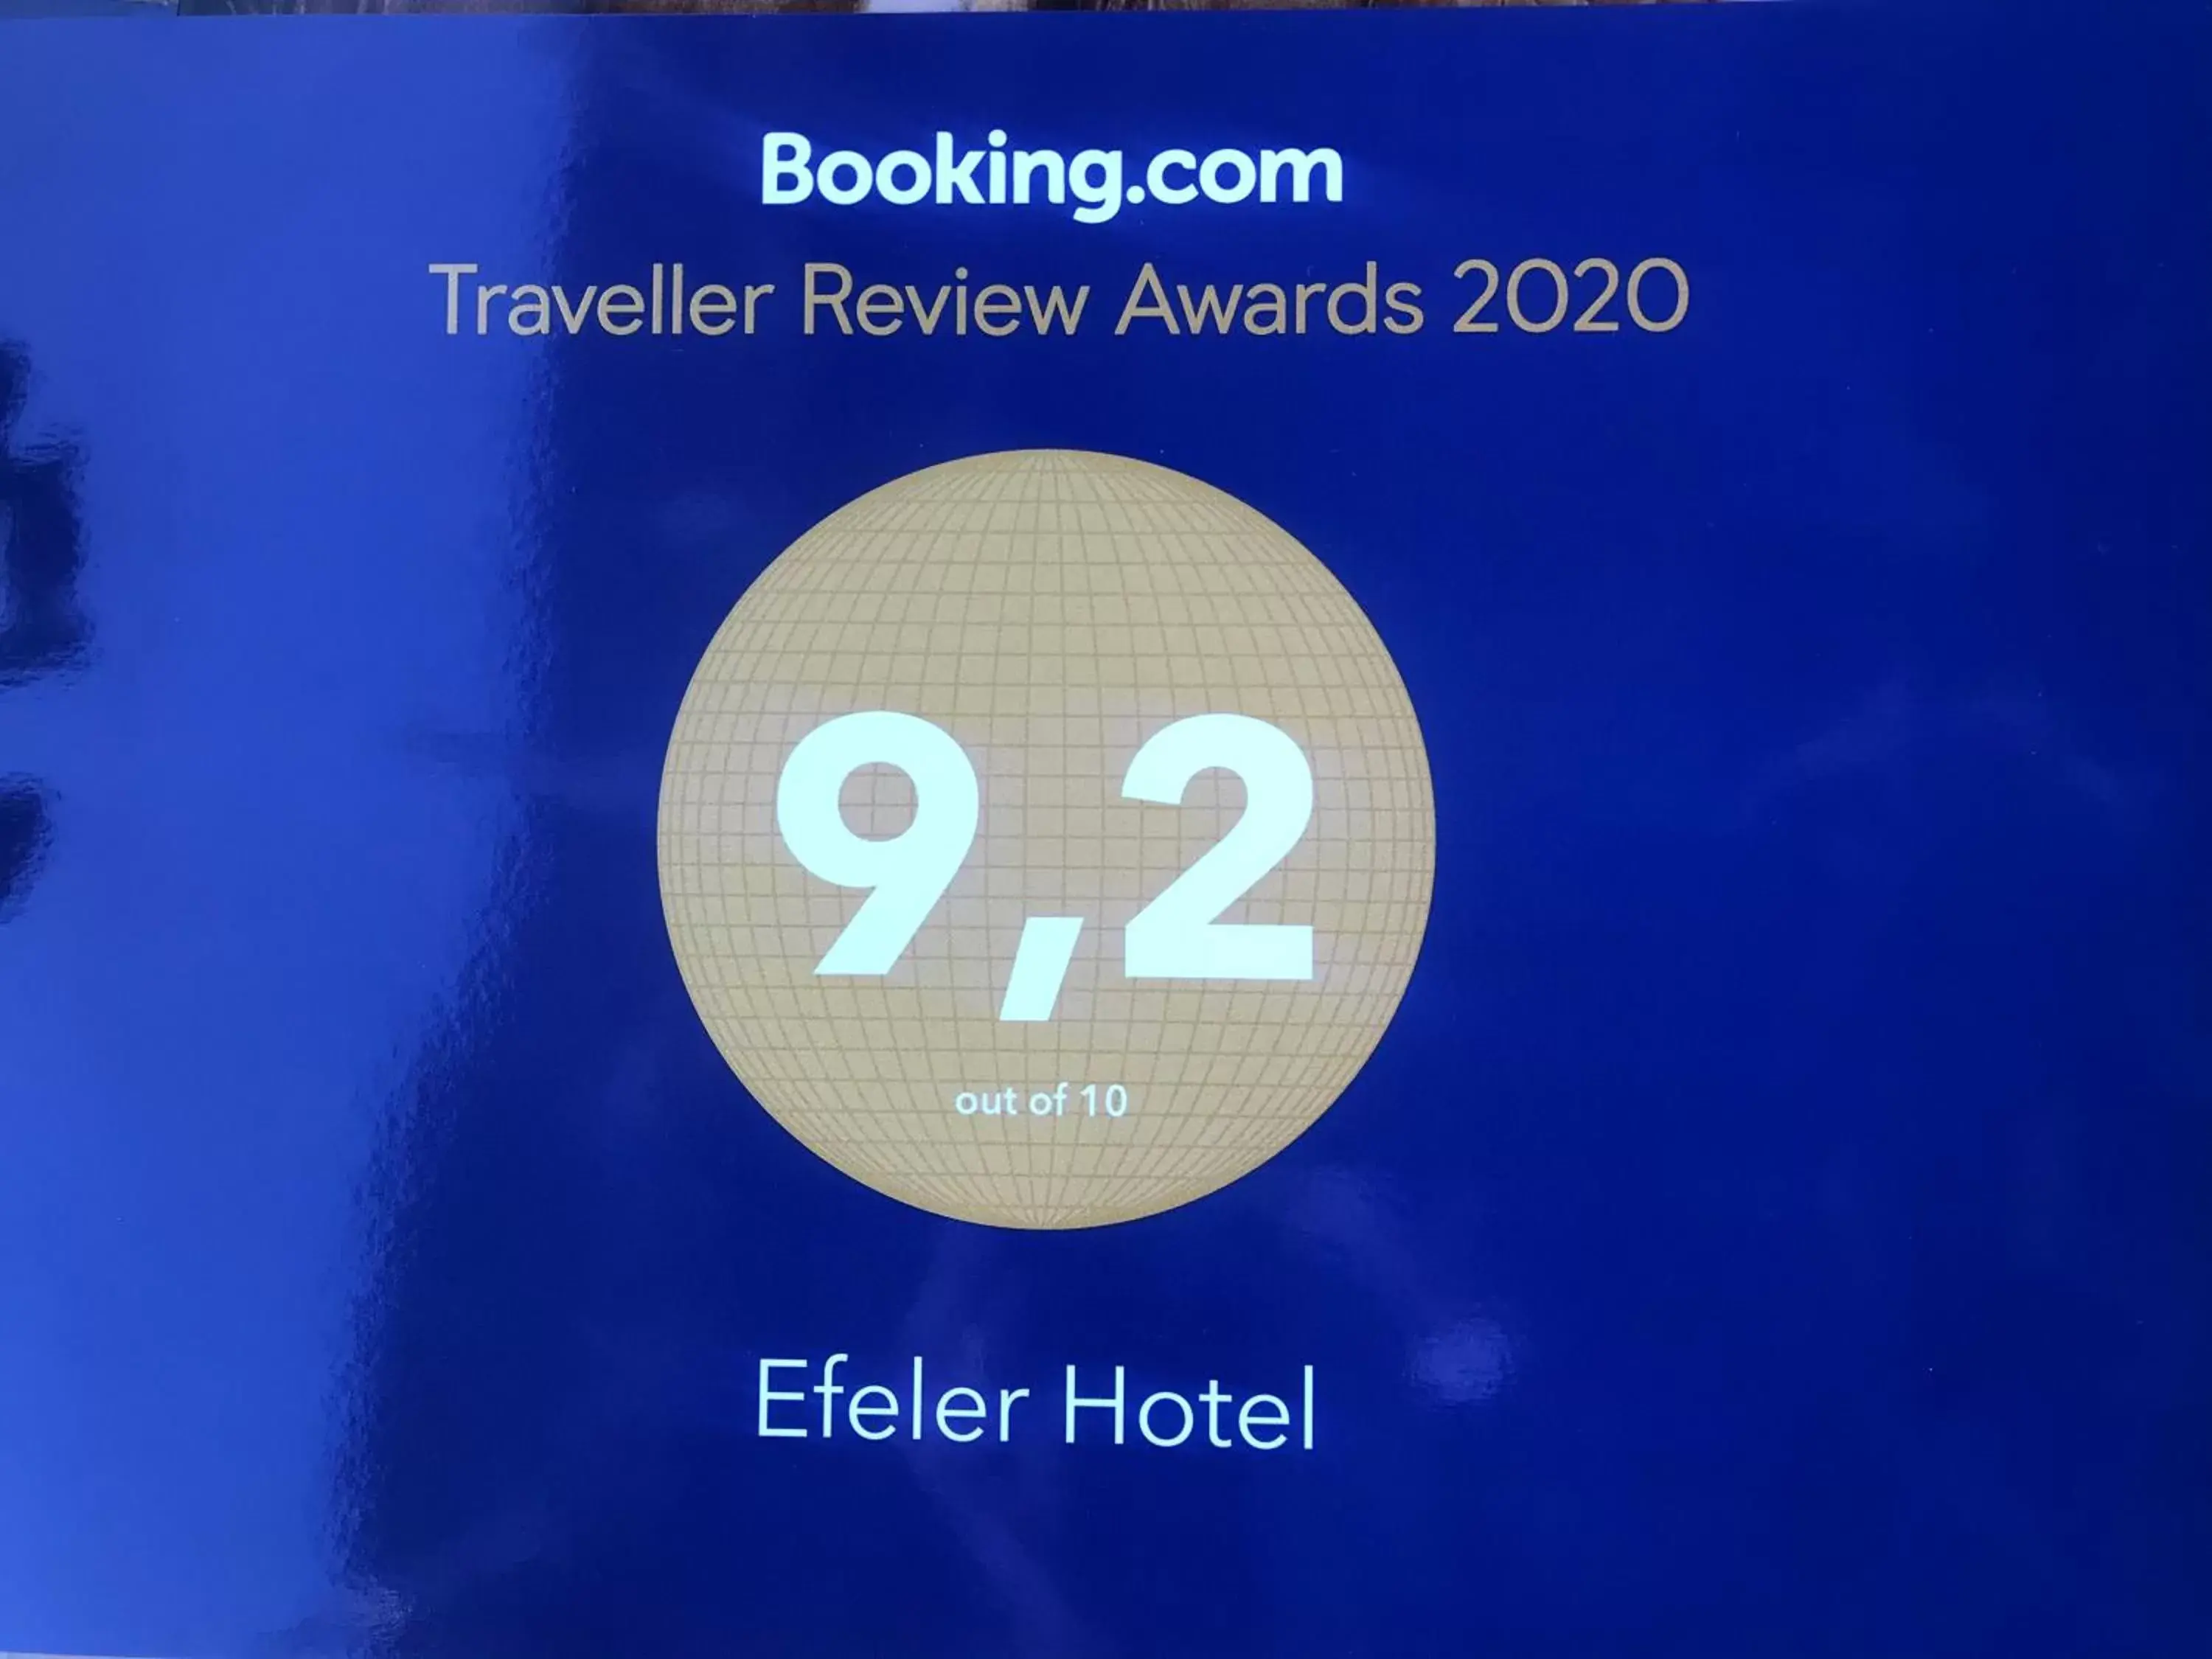 Certificate/Award in Efeler Hotel